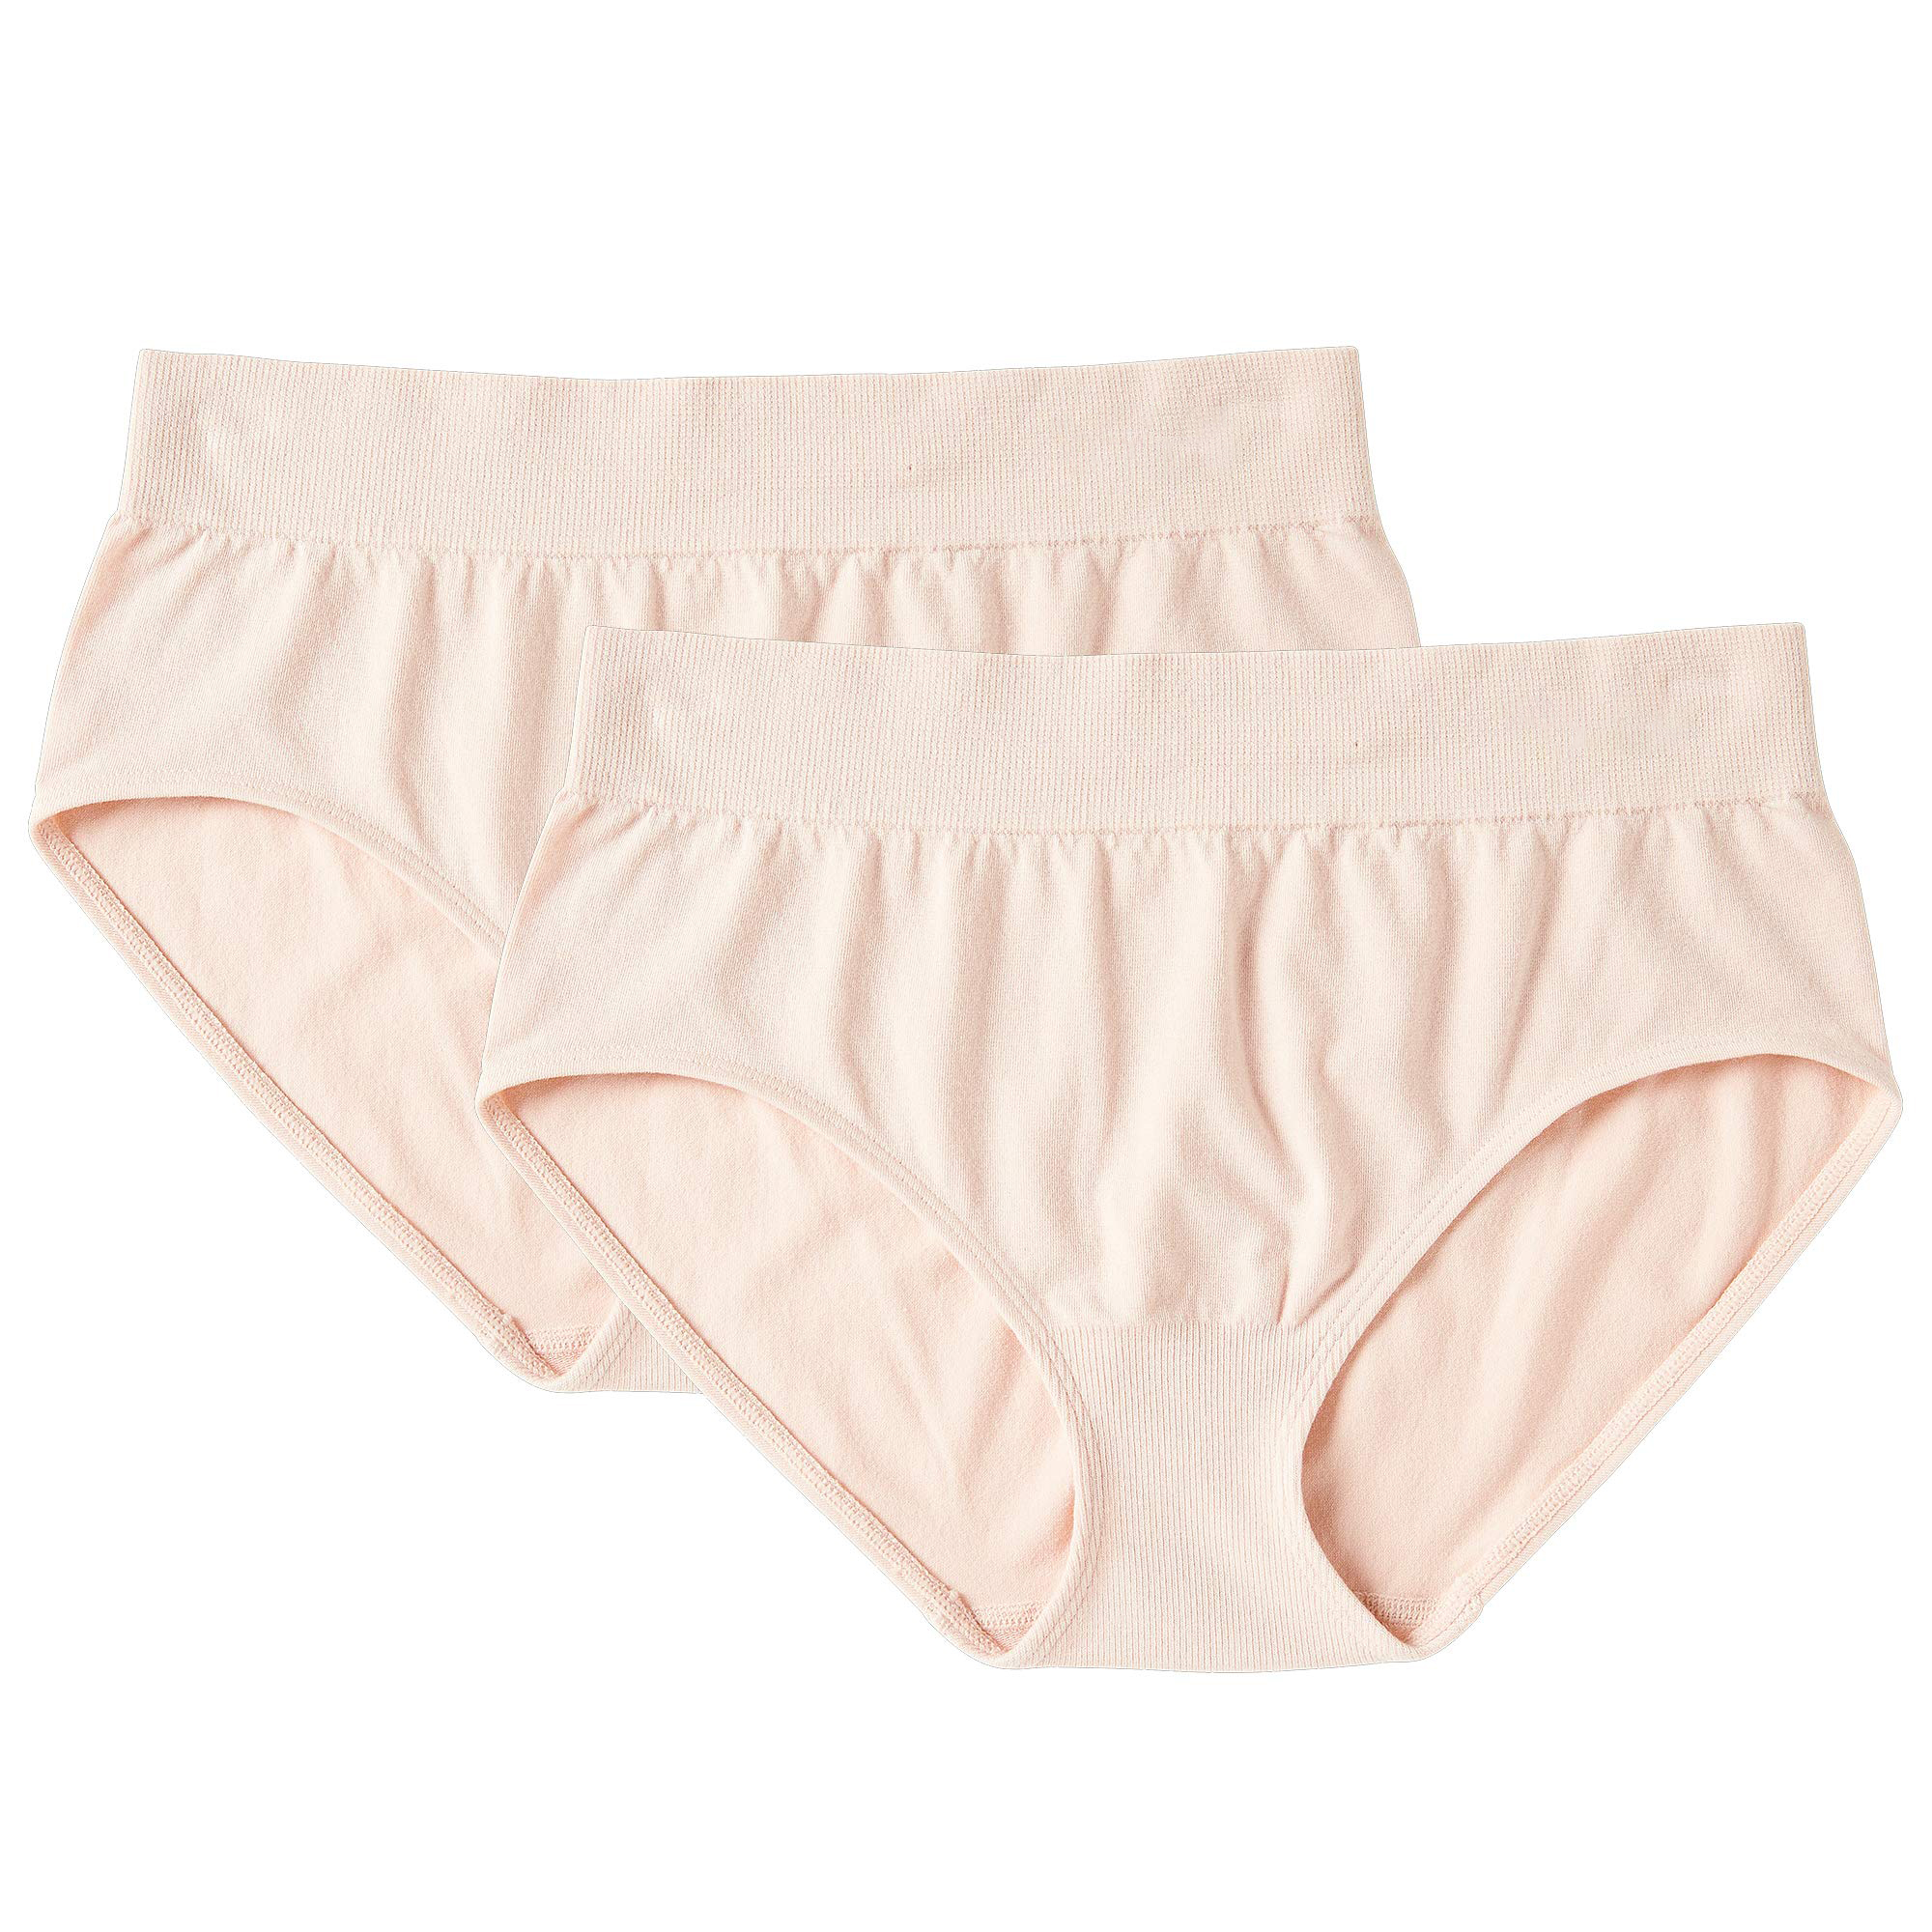 women's underwear (6)